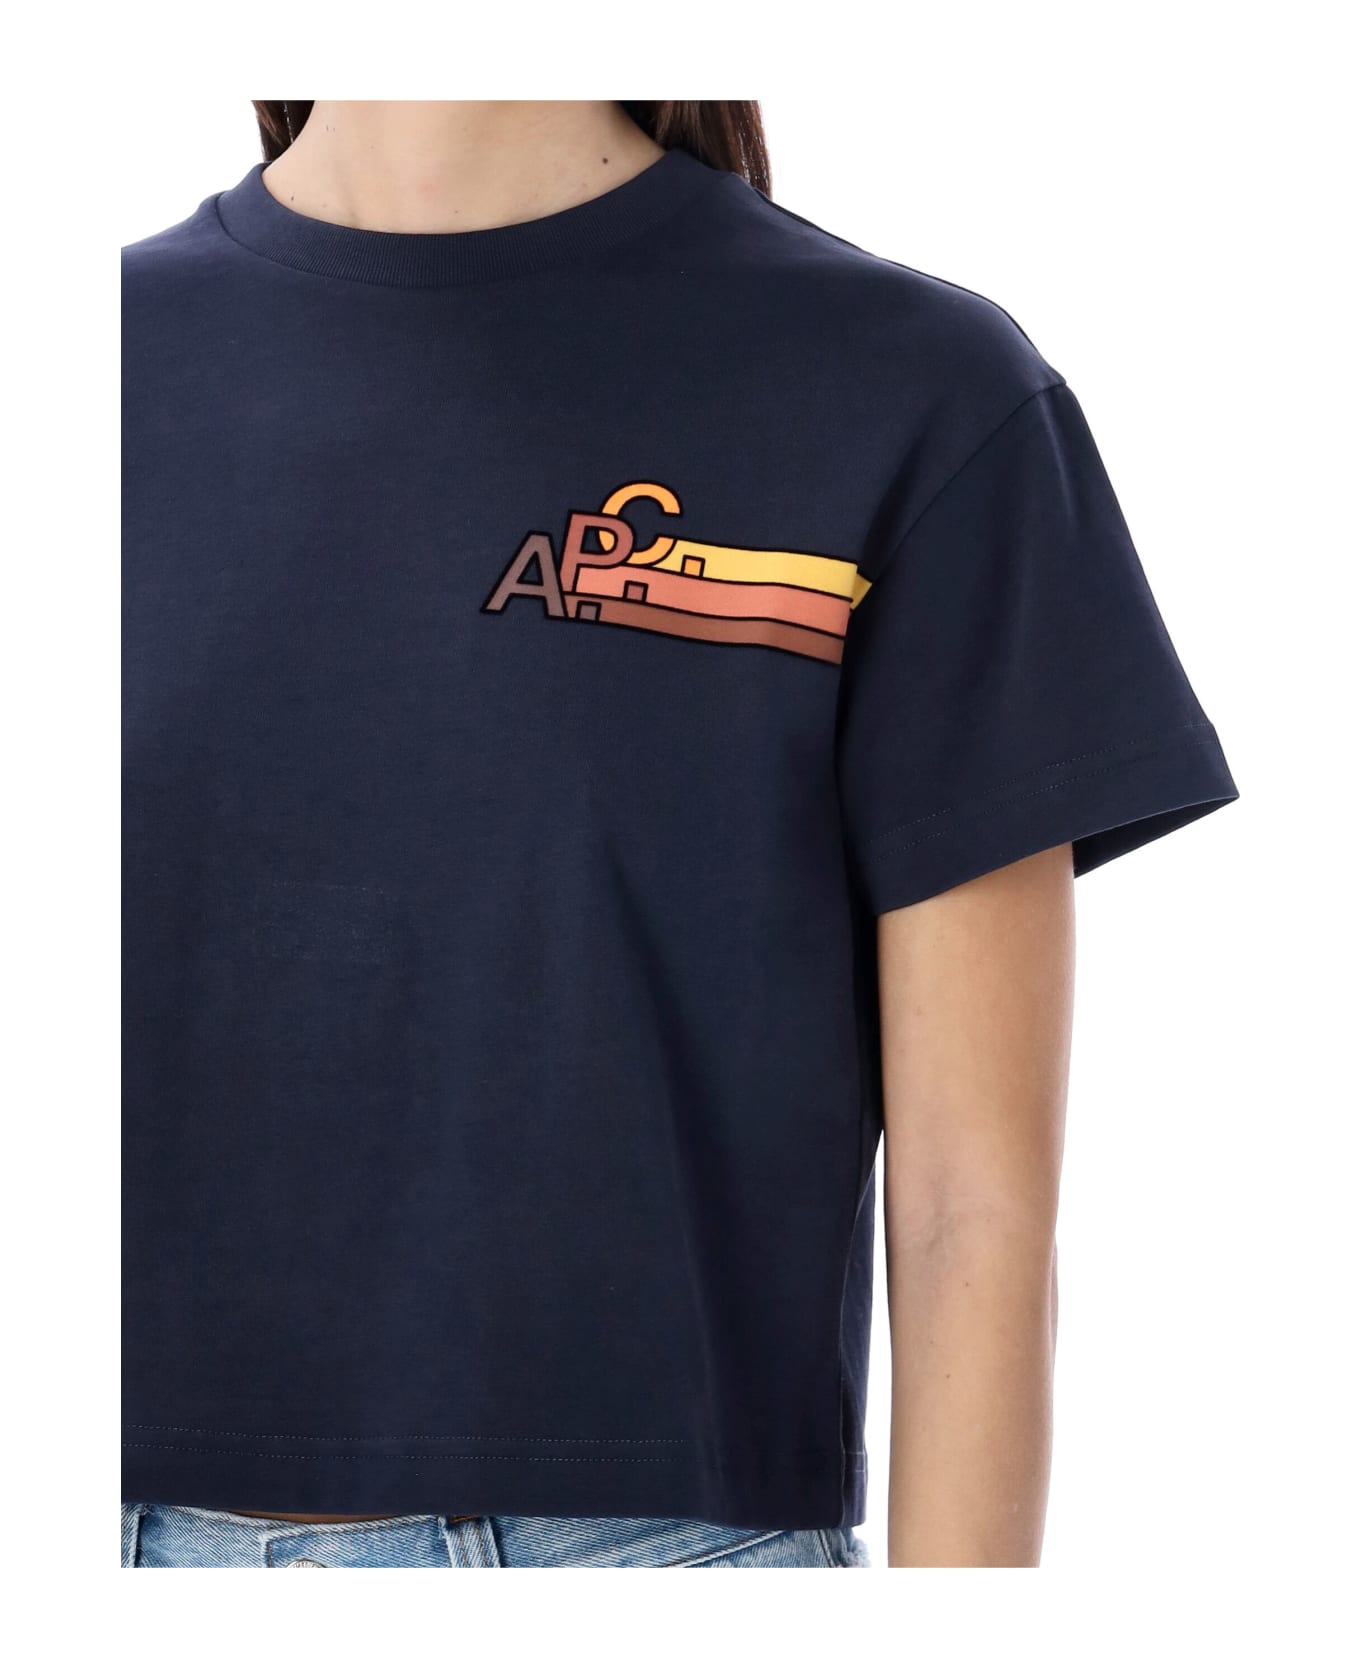 A.P.C. Sonia T-shirt - DARK NAVY Tシャツ